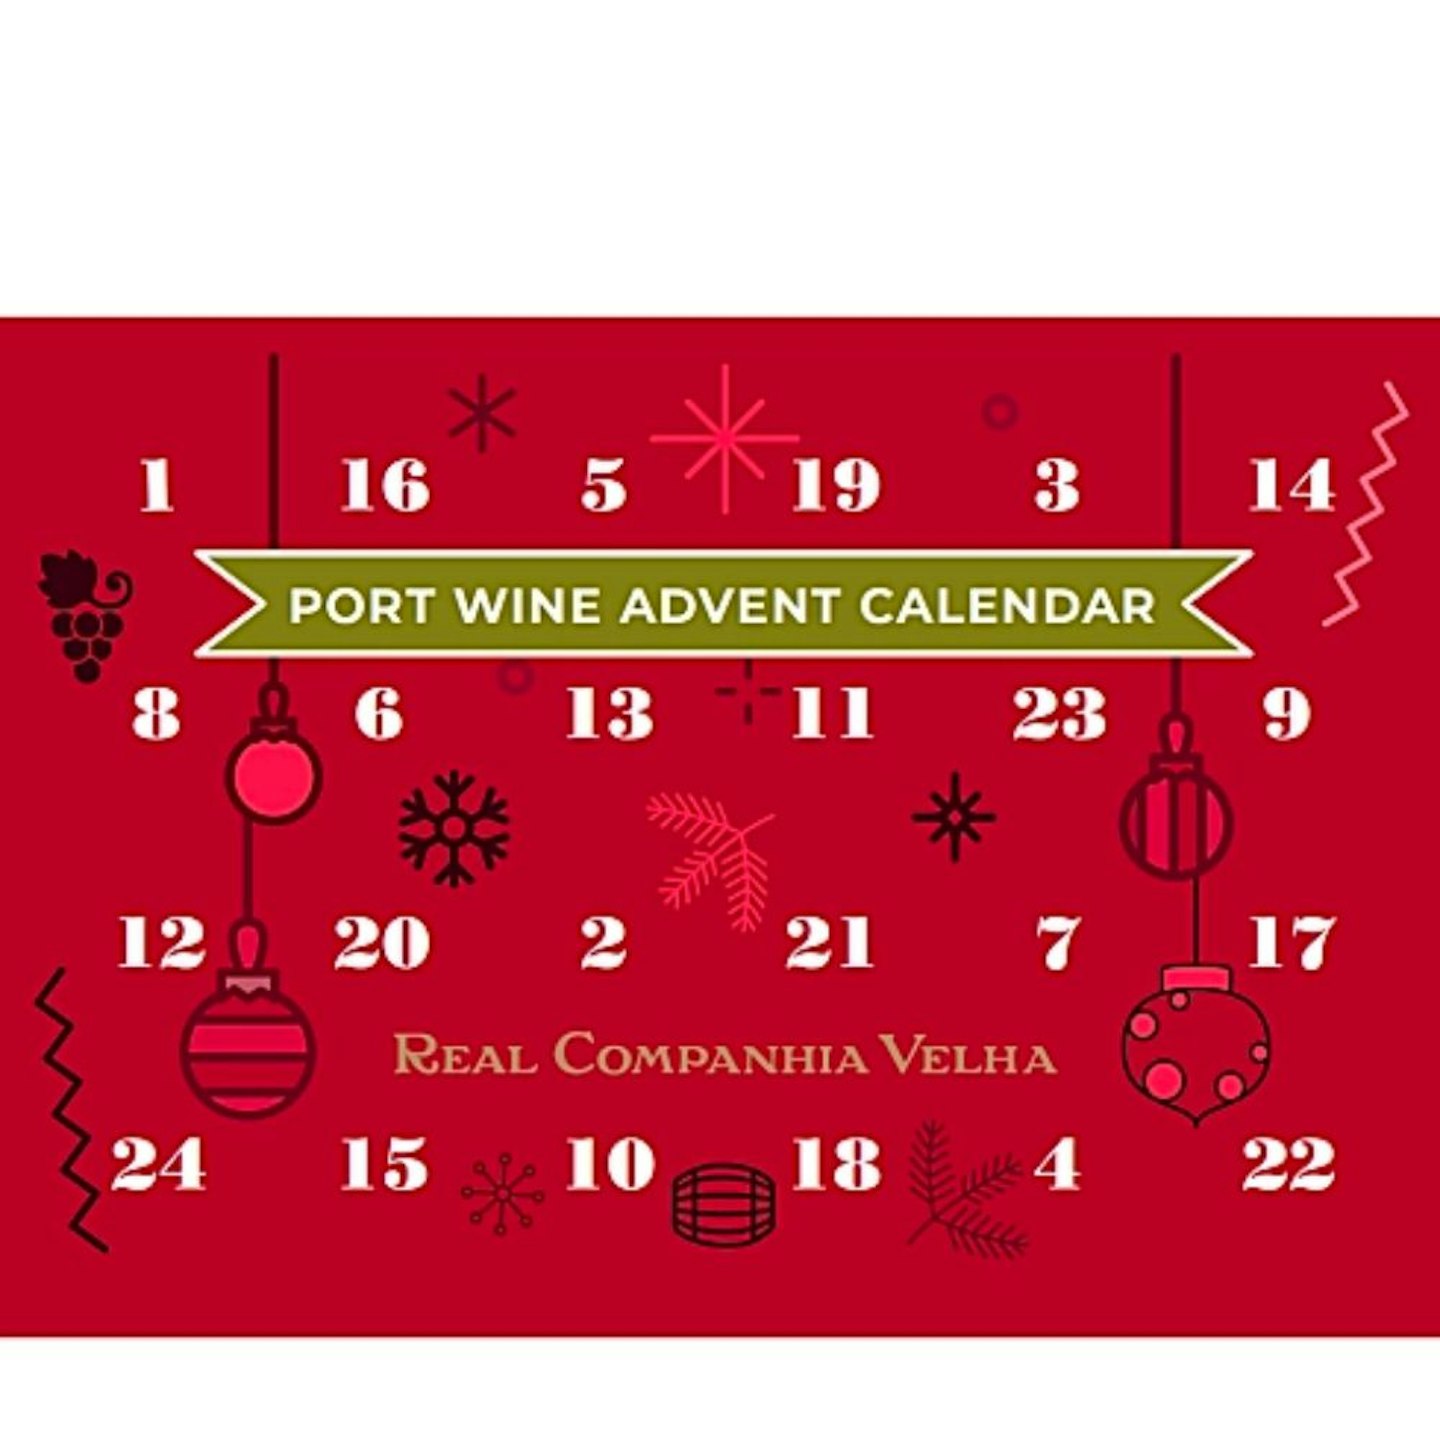 Real Companhia Velha Port Wine Advent Calendar